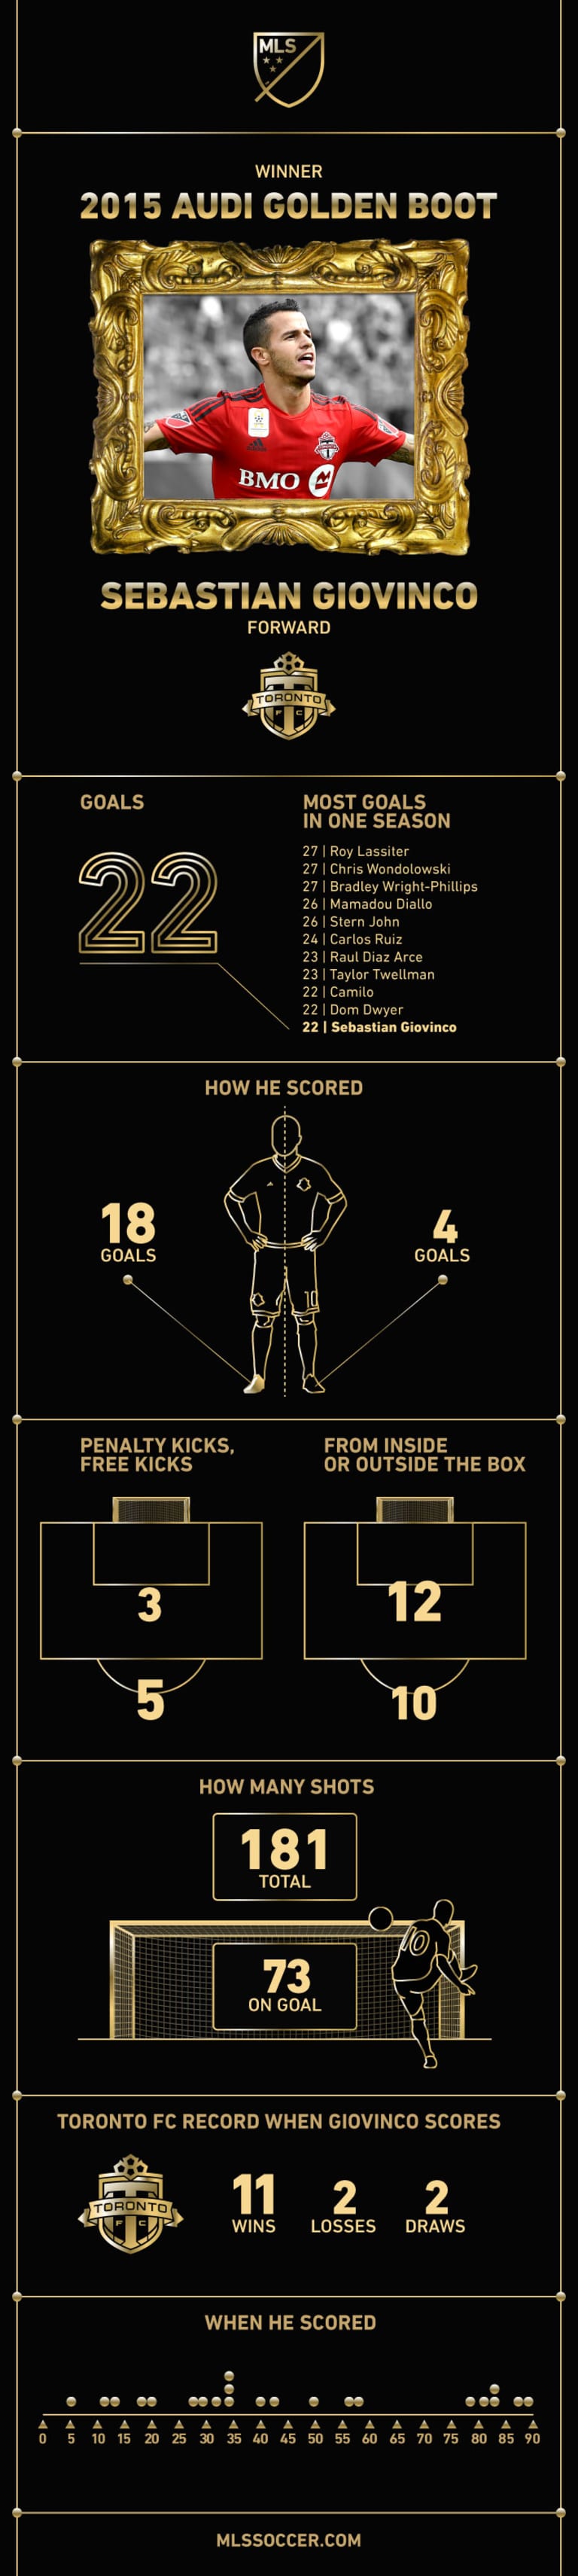 Toronto FC's Sebastian Giovinco wins 2015 Audi Golden Boot  - https://league-mp7static.mlsdigital.net/images/GOLDEN_BOOT.jpg